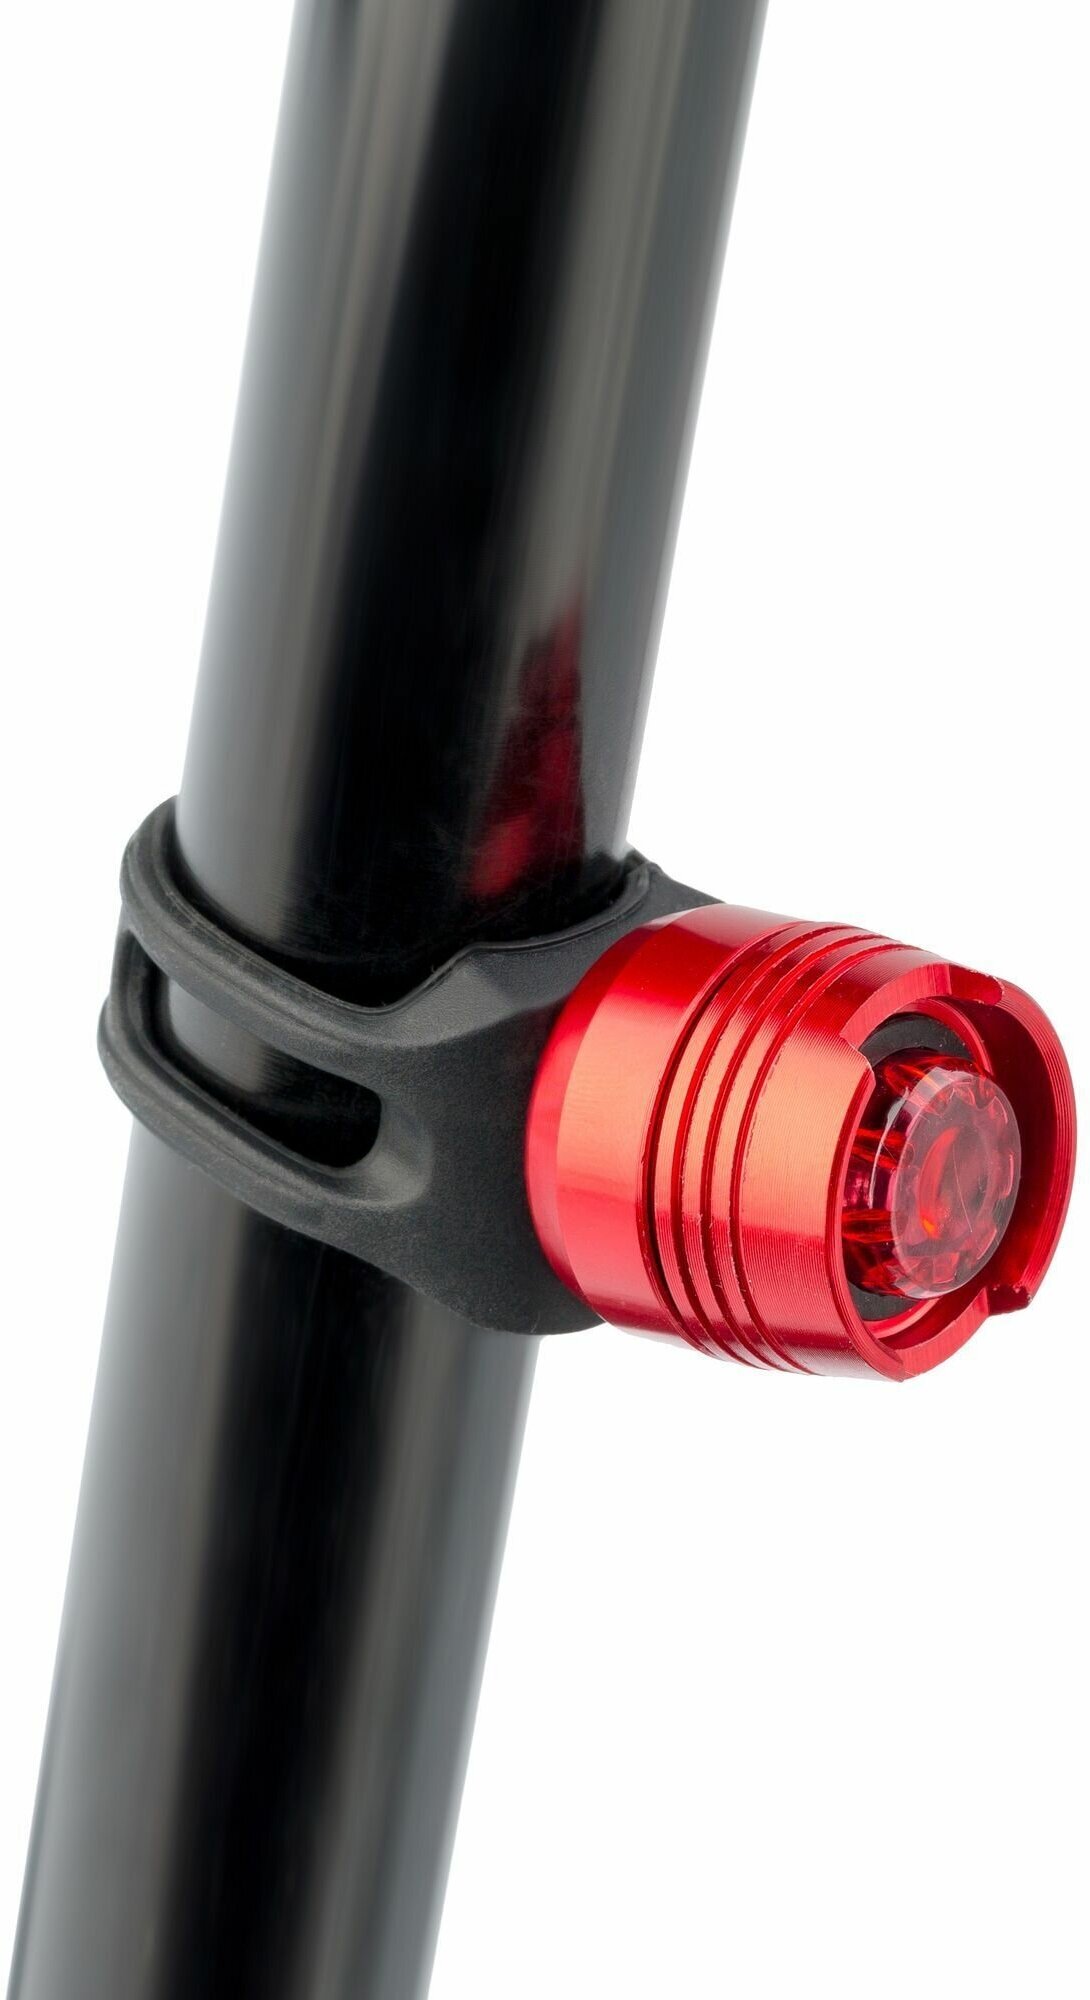 Габарит велосипеда 1 светодиод, алюминиевый корпус красный, светодиод красный